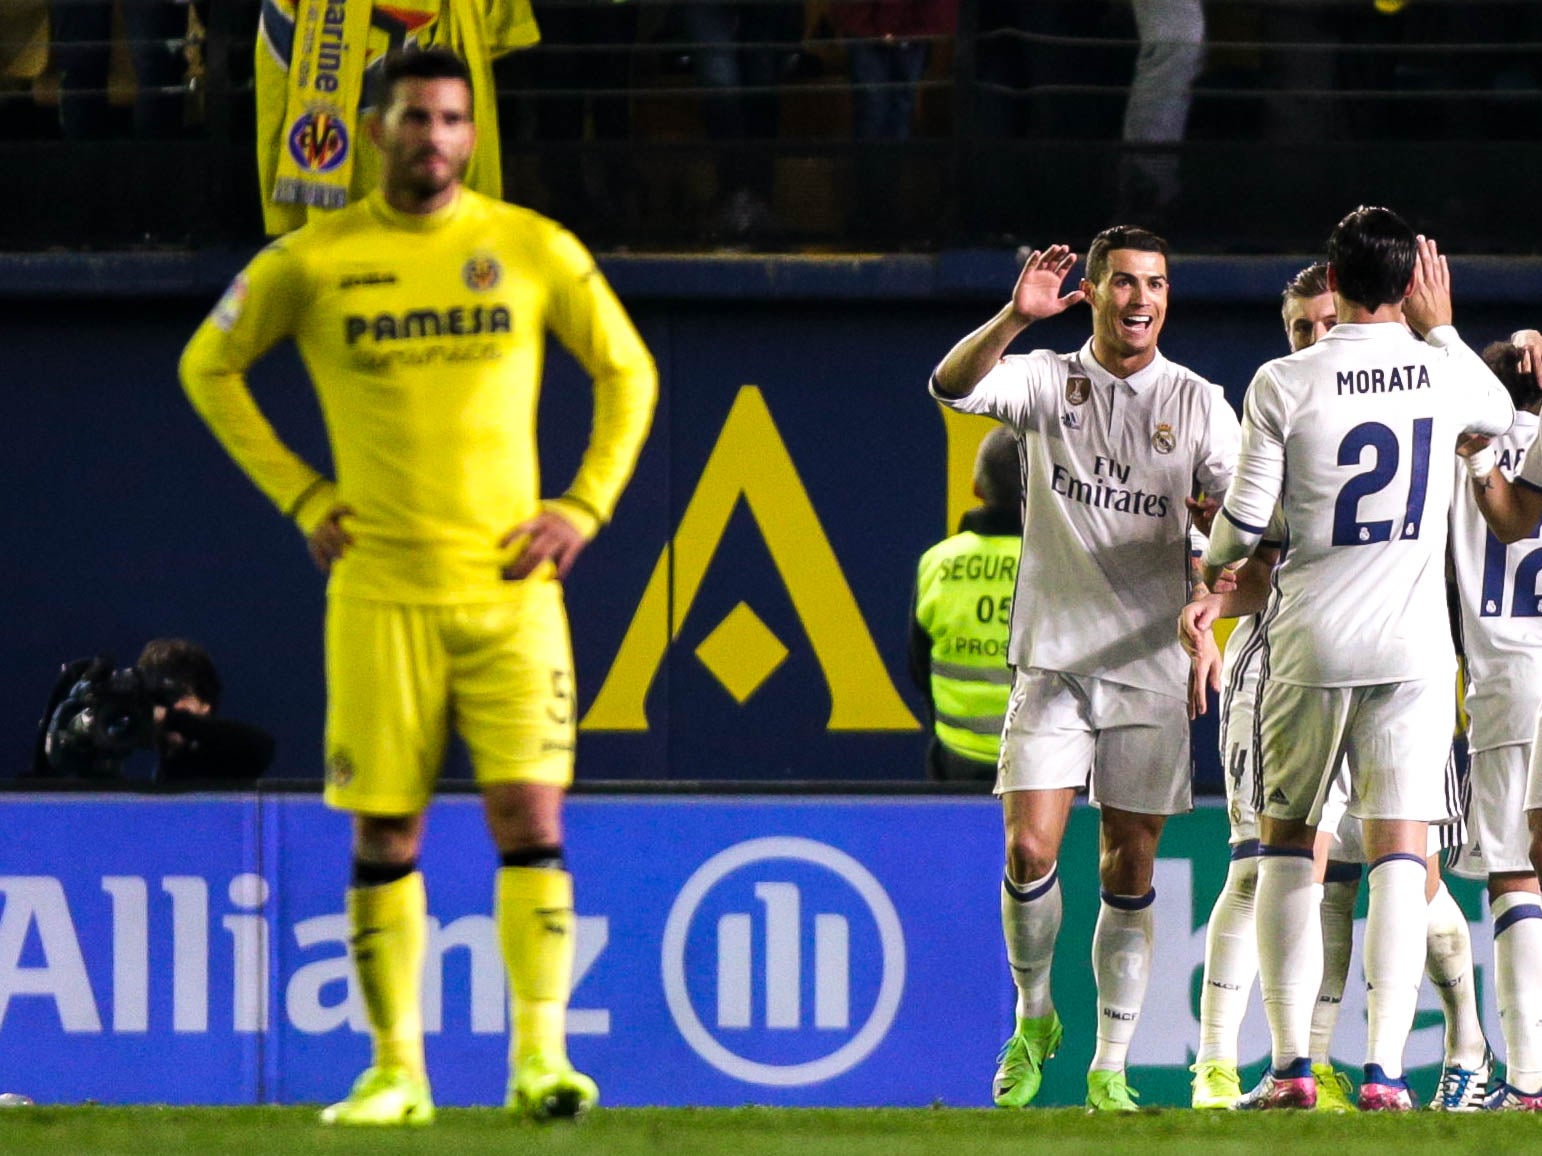 Ronaldo celebrates his second half-goal with his team-mates